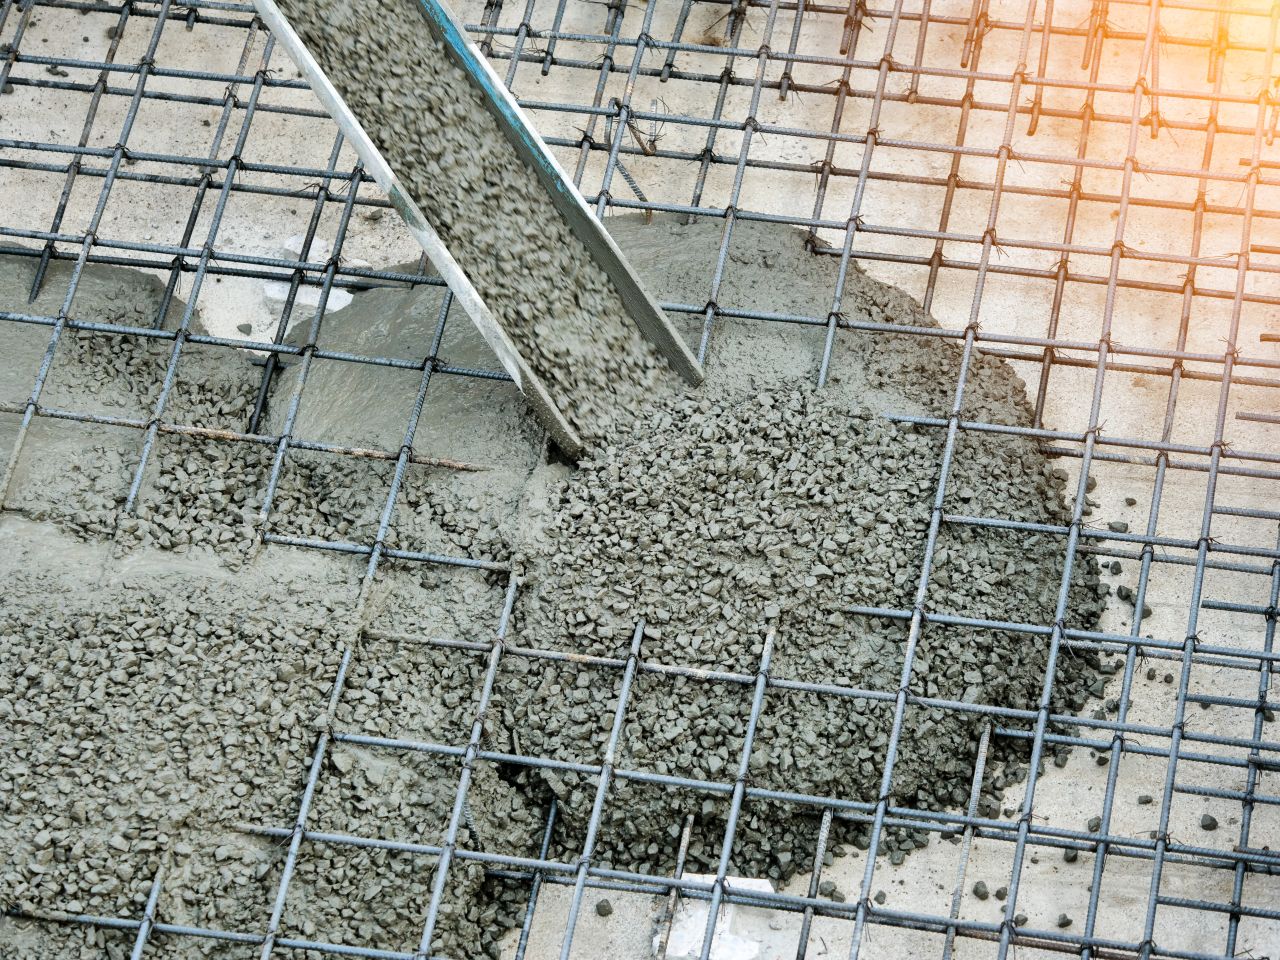 Jakich urządzeń używa się do zagęszczania betonu?